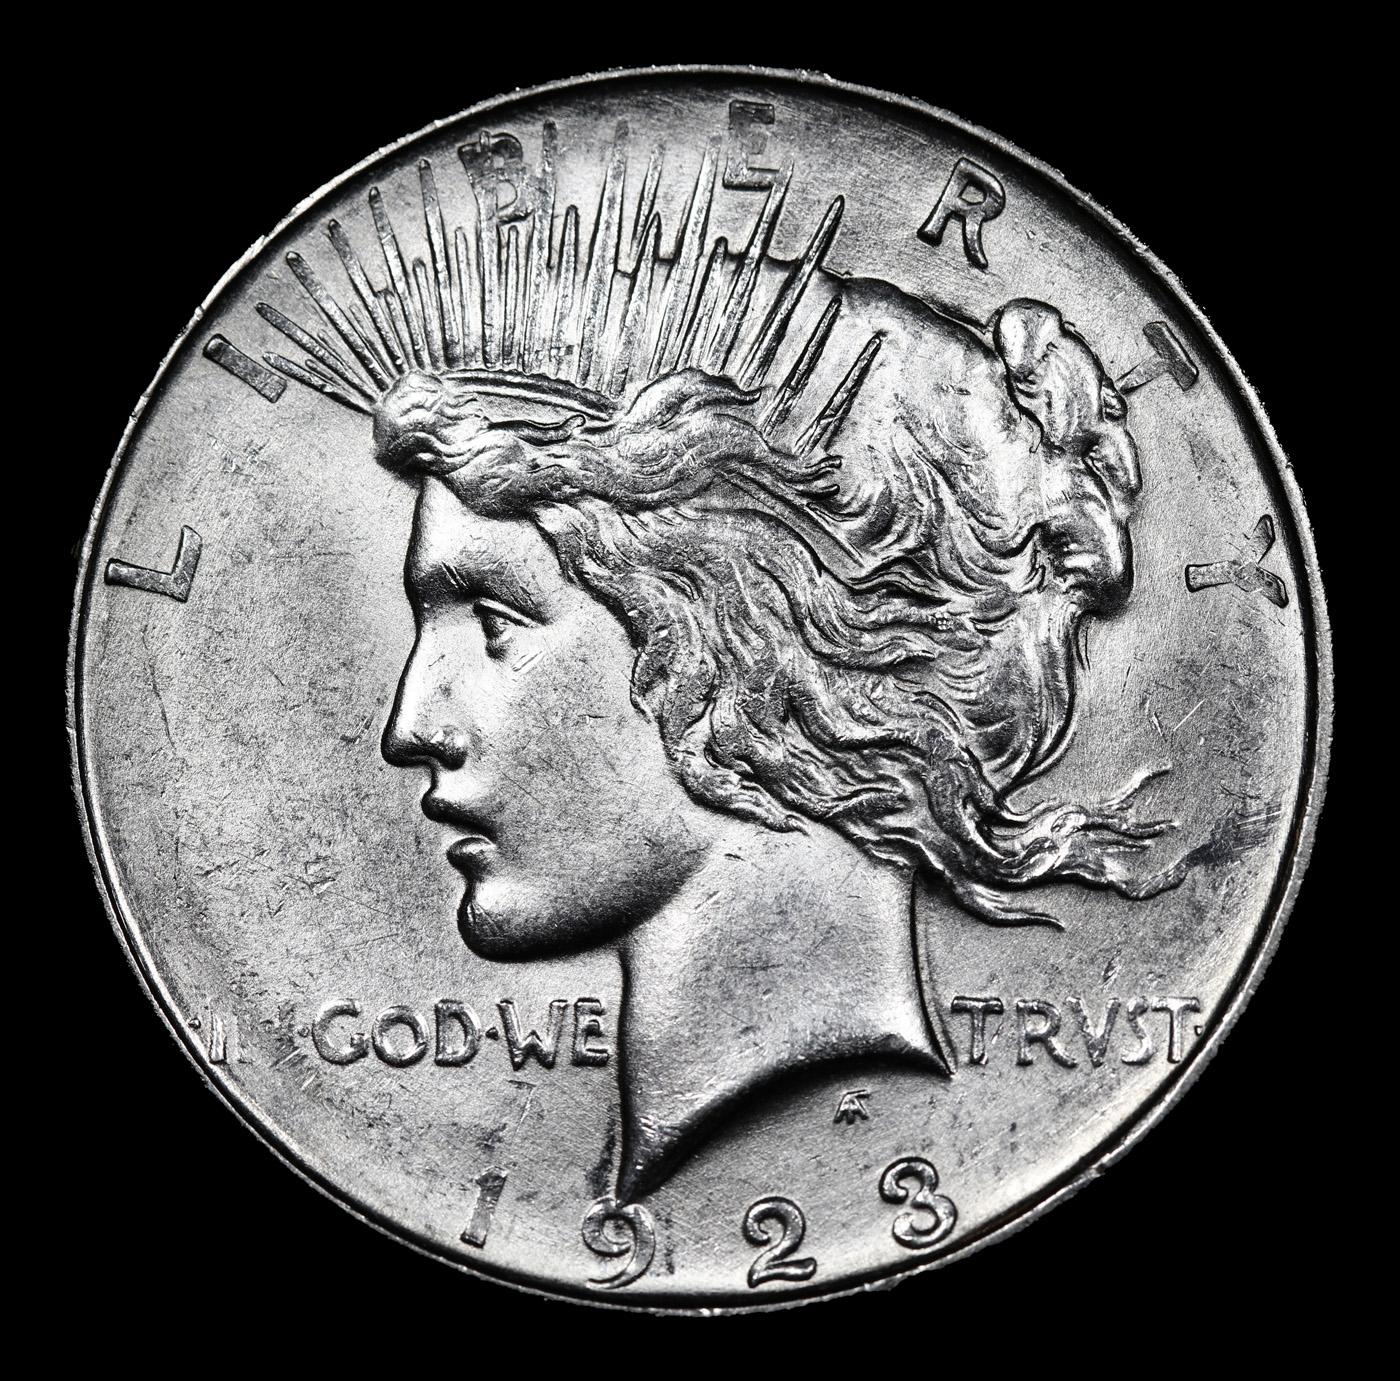 1923-d Peace Dollar $1 Graded ms64 BY SEGS